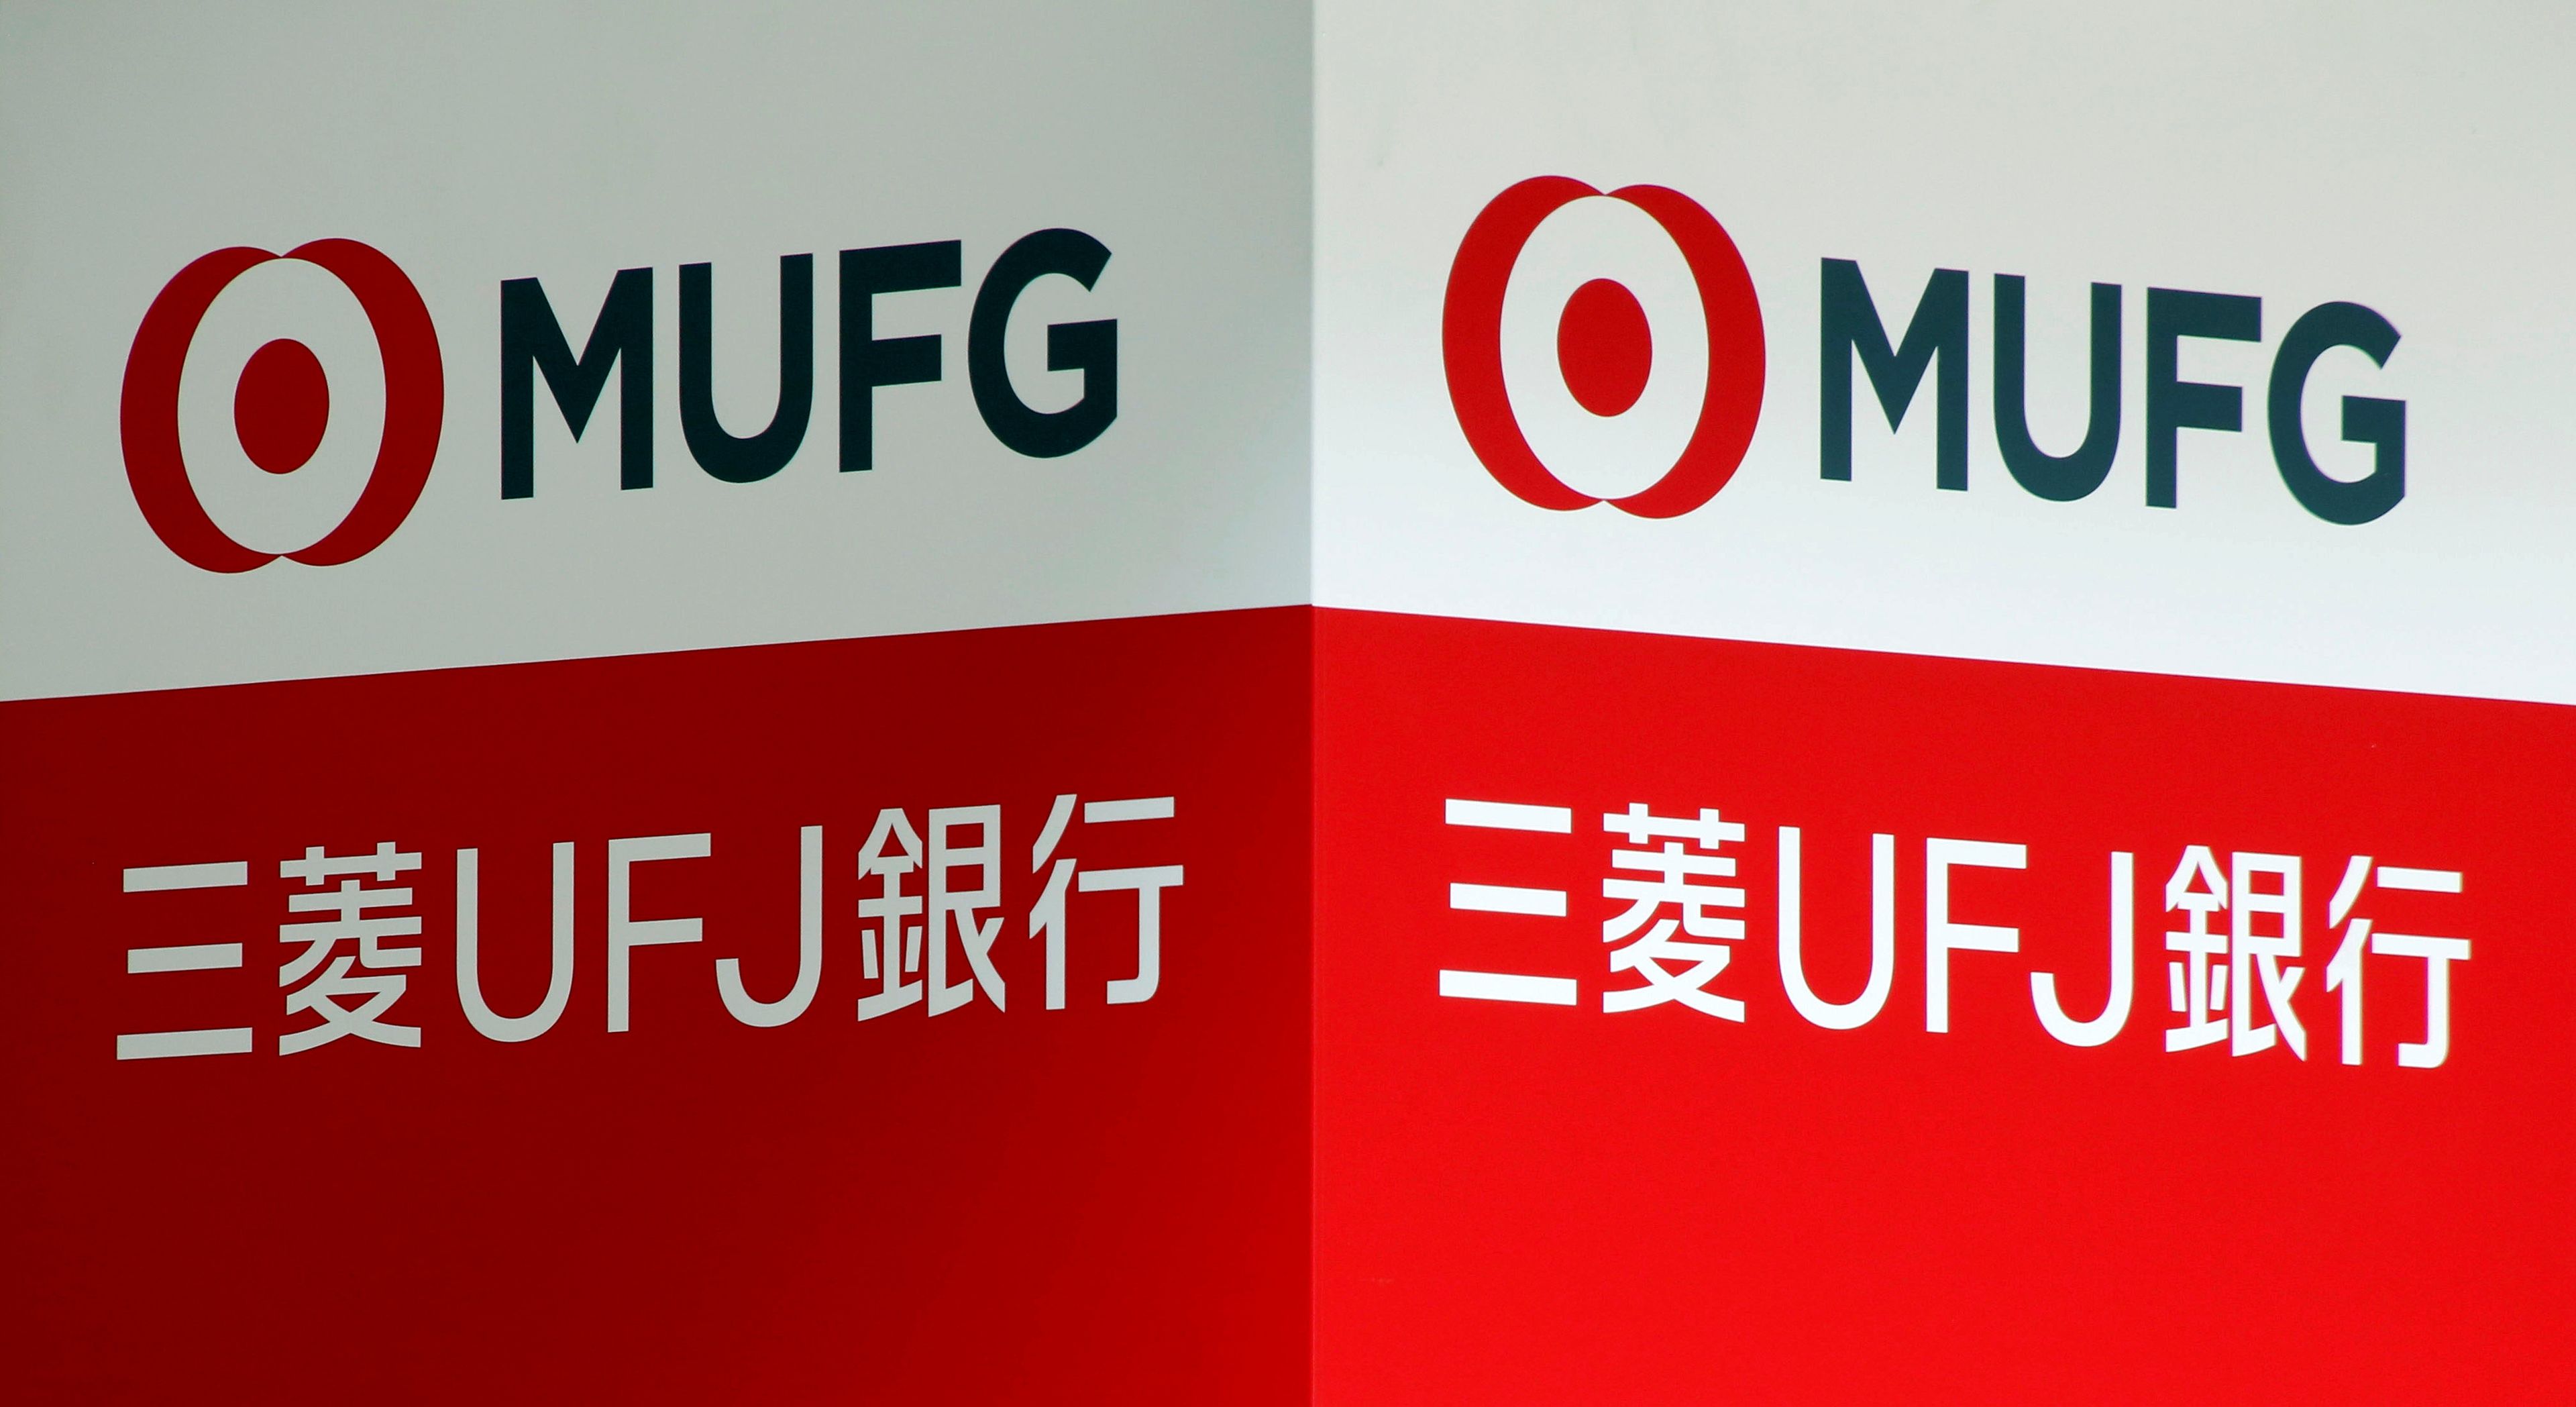 El MUFG Bank es uno de los bancos que respaldan este yen digital.